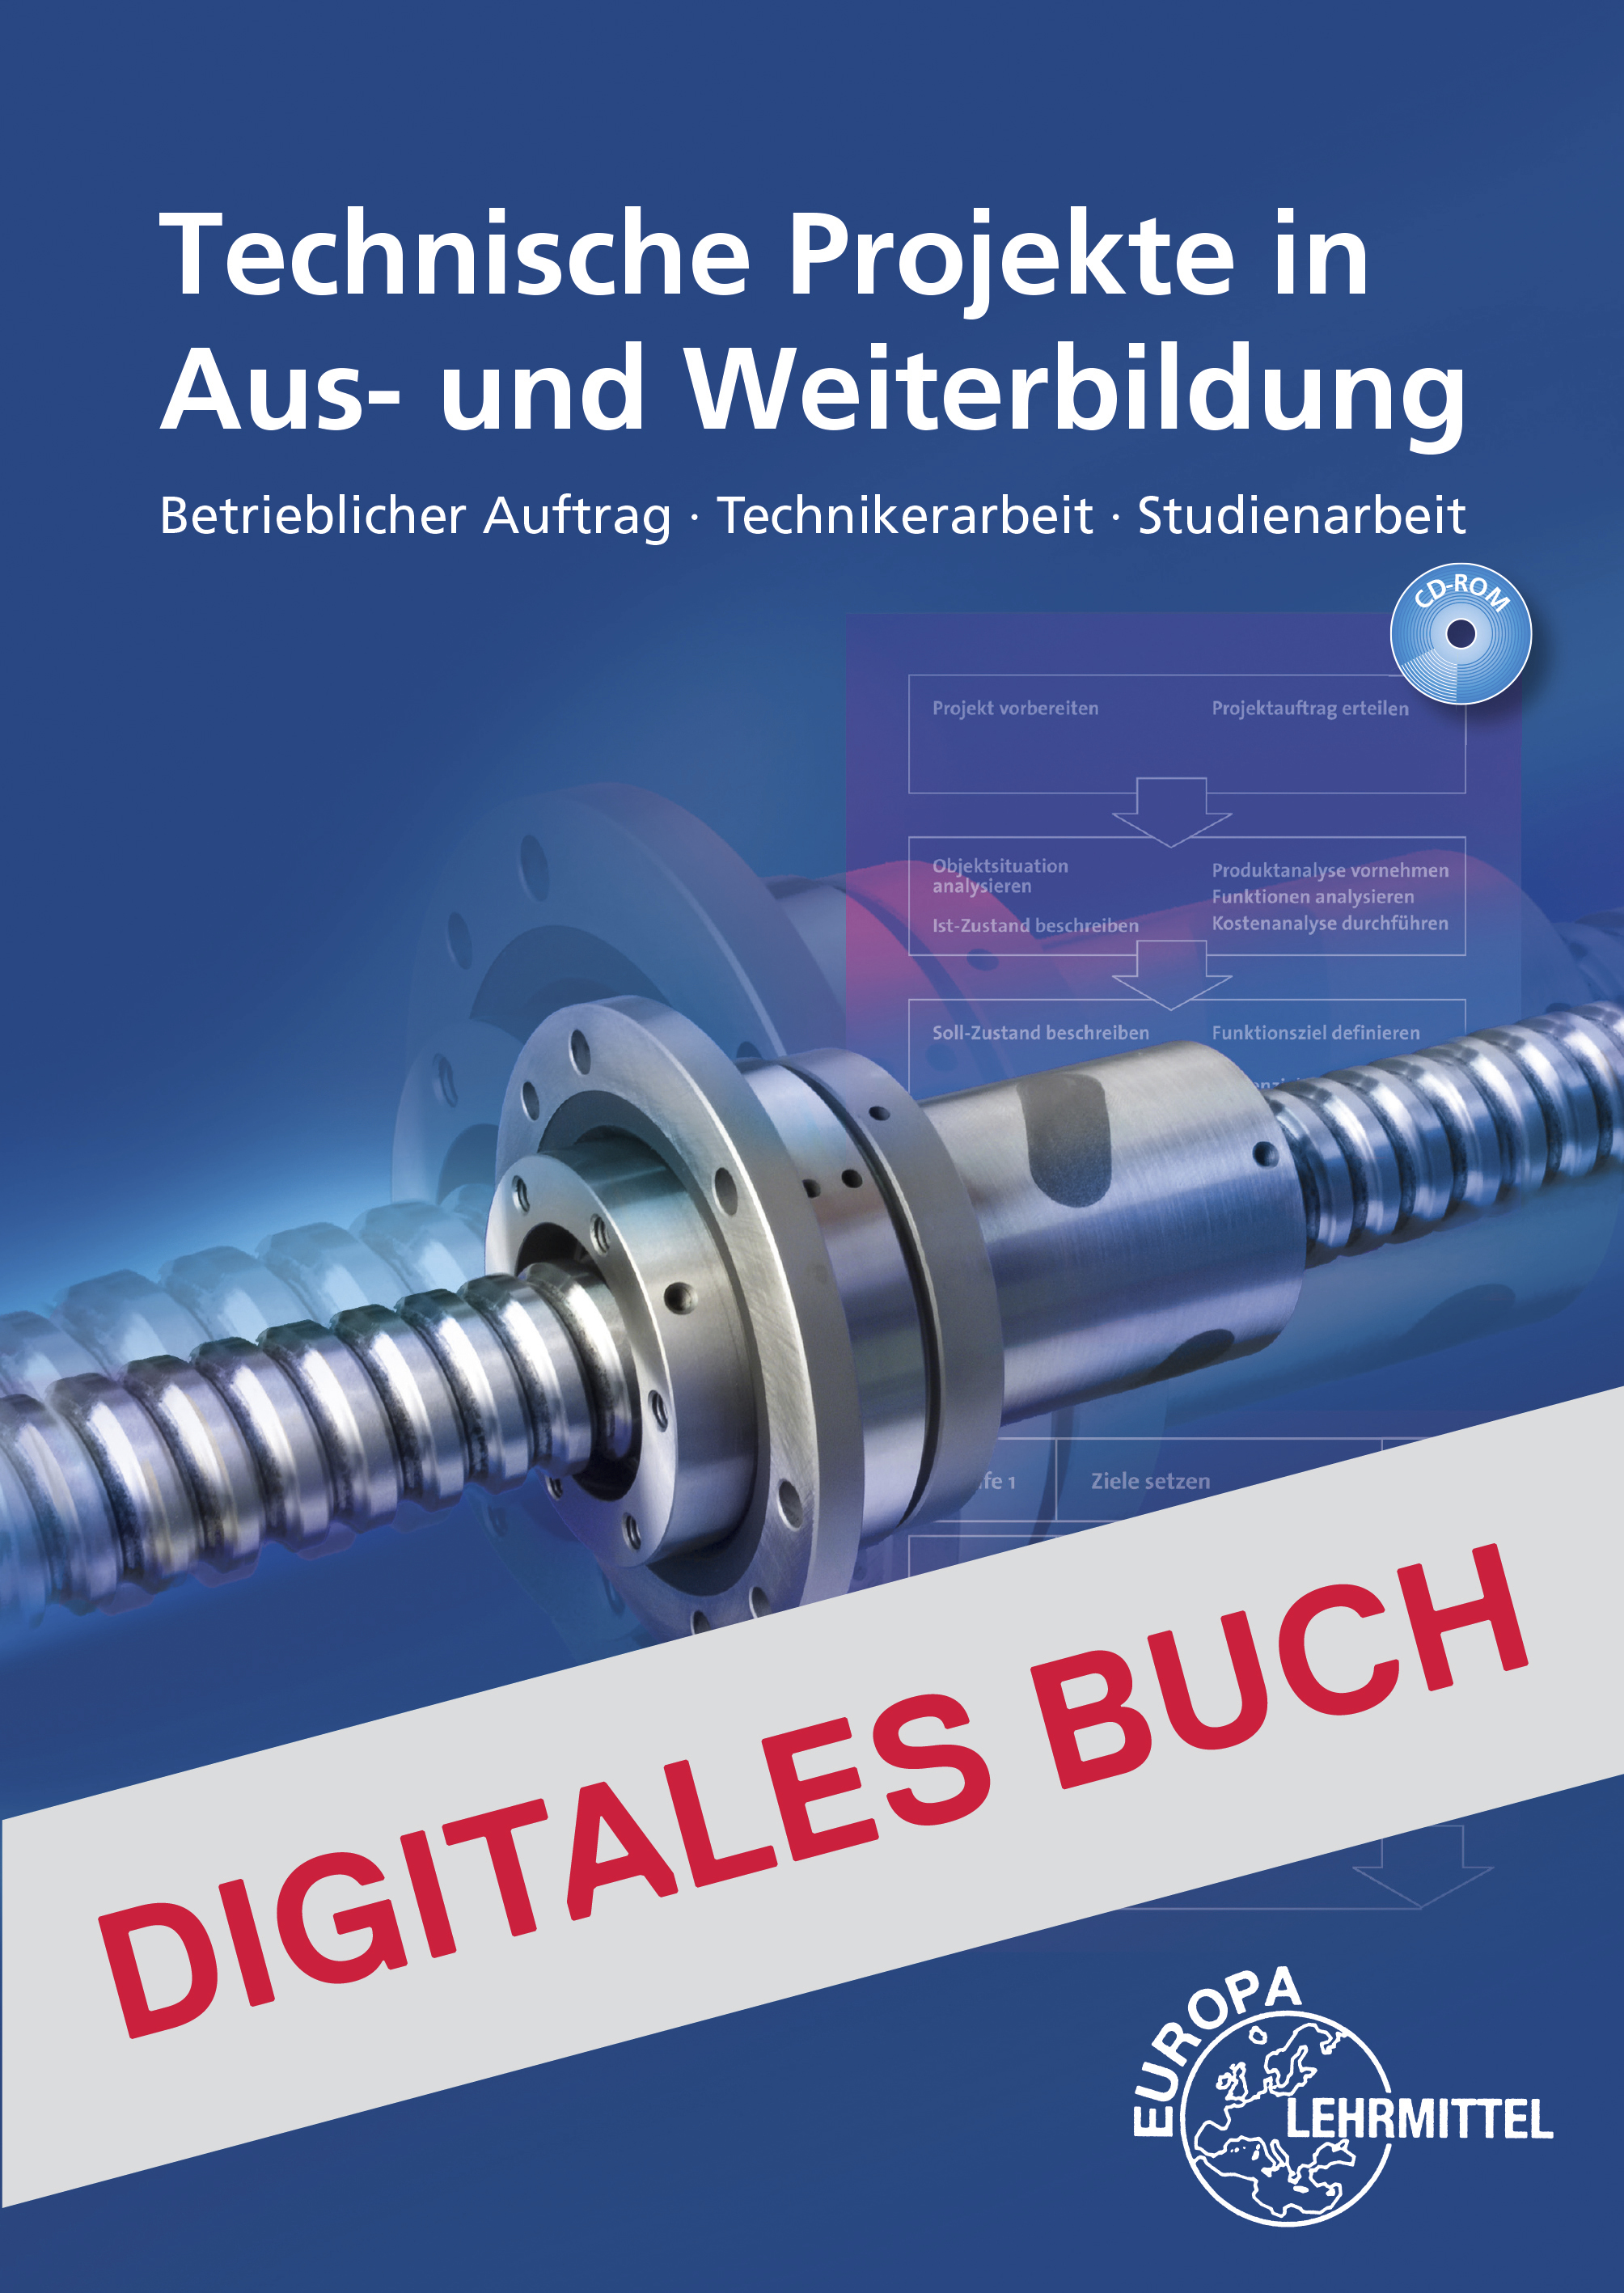 Technische Projekte in Aus- und Weiterbildung - Digitales Buch